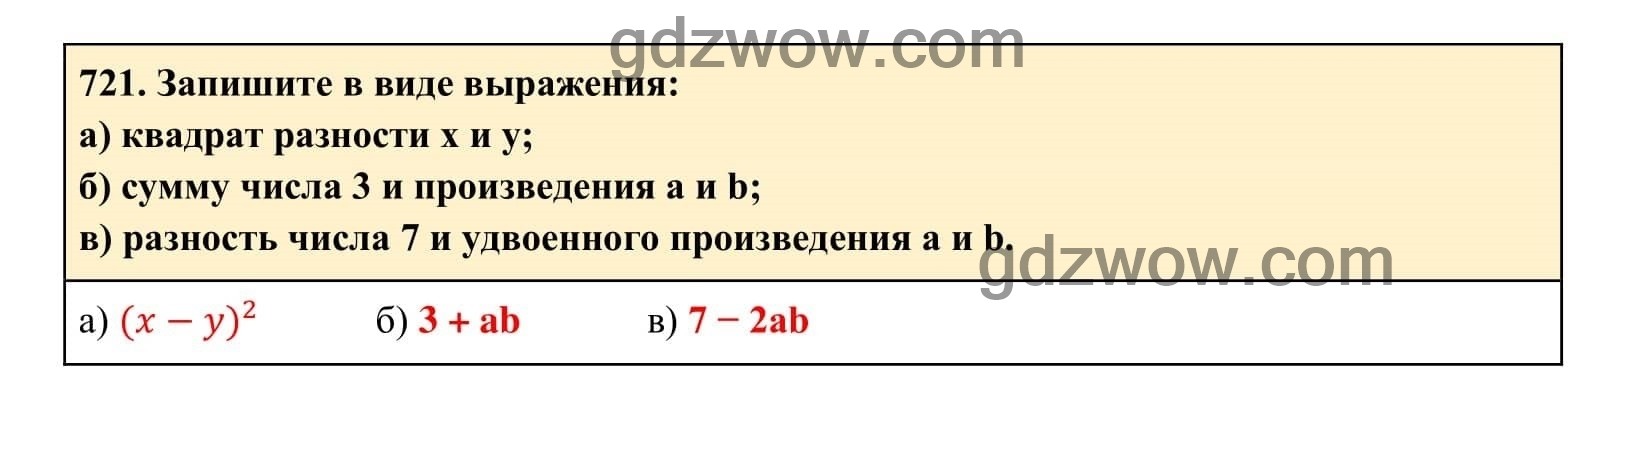 Упражнение 721 - ГДЗ по Алгебре 7 класс Учебник Макарычев (решебник) - GDZwow